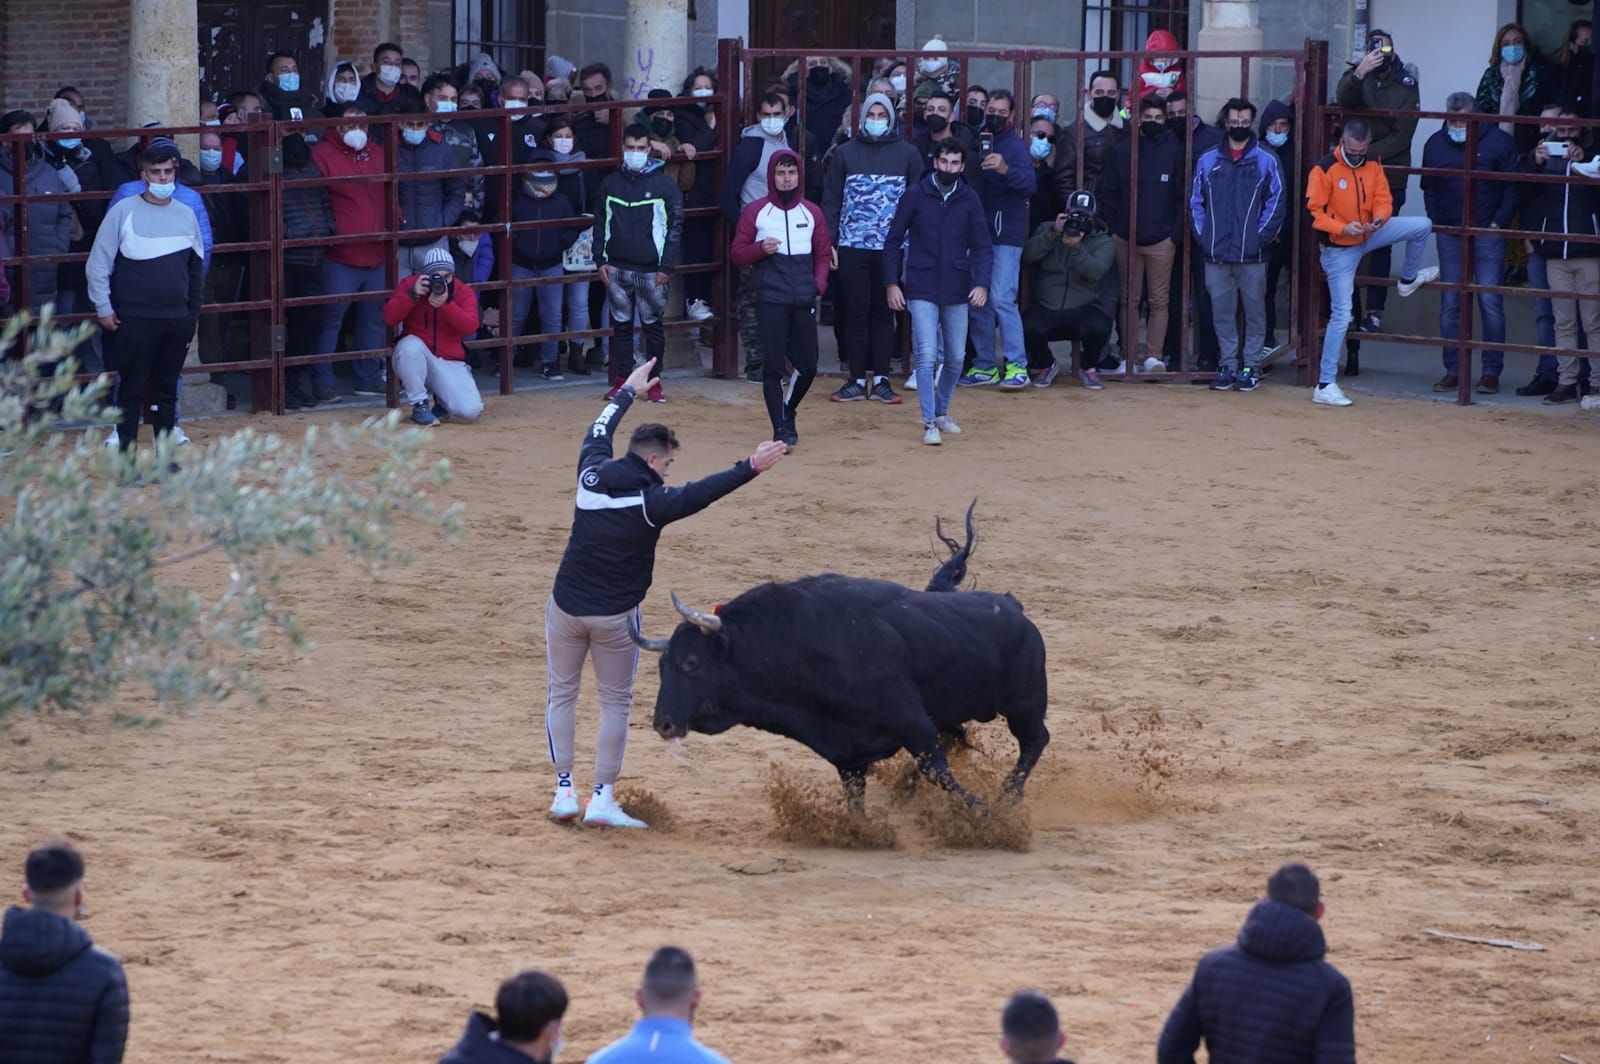 GALERÍA | Vuelve el Toro de la Purísima a Villalpando: así se ha celebrado el festejo taurino